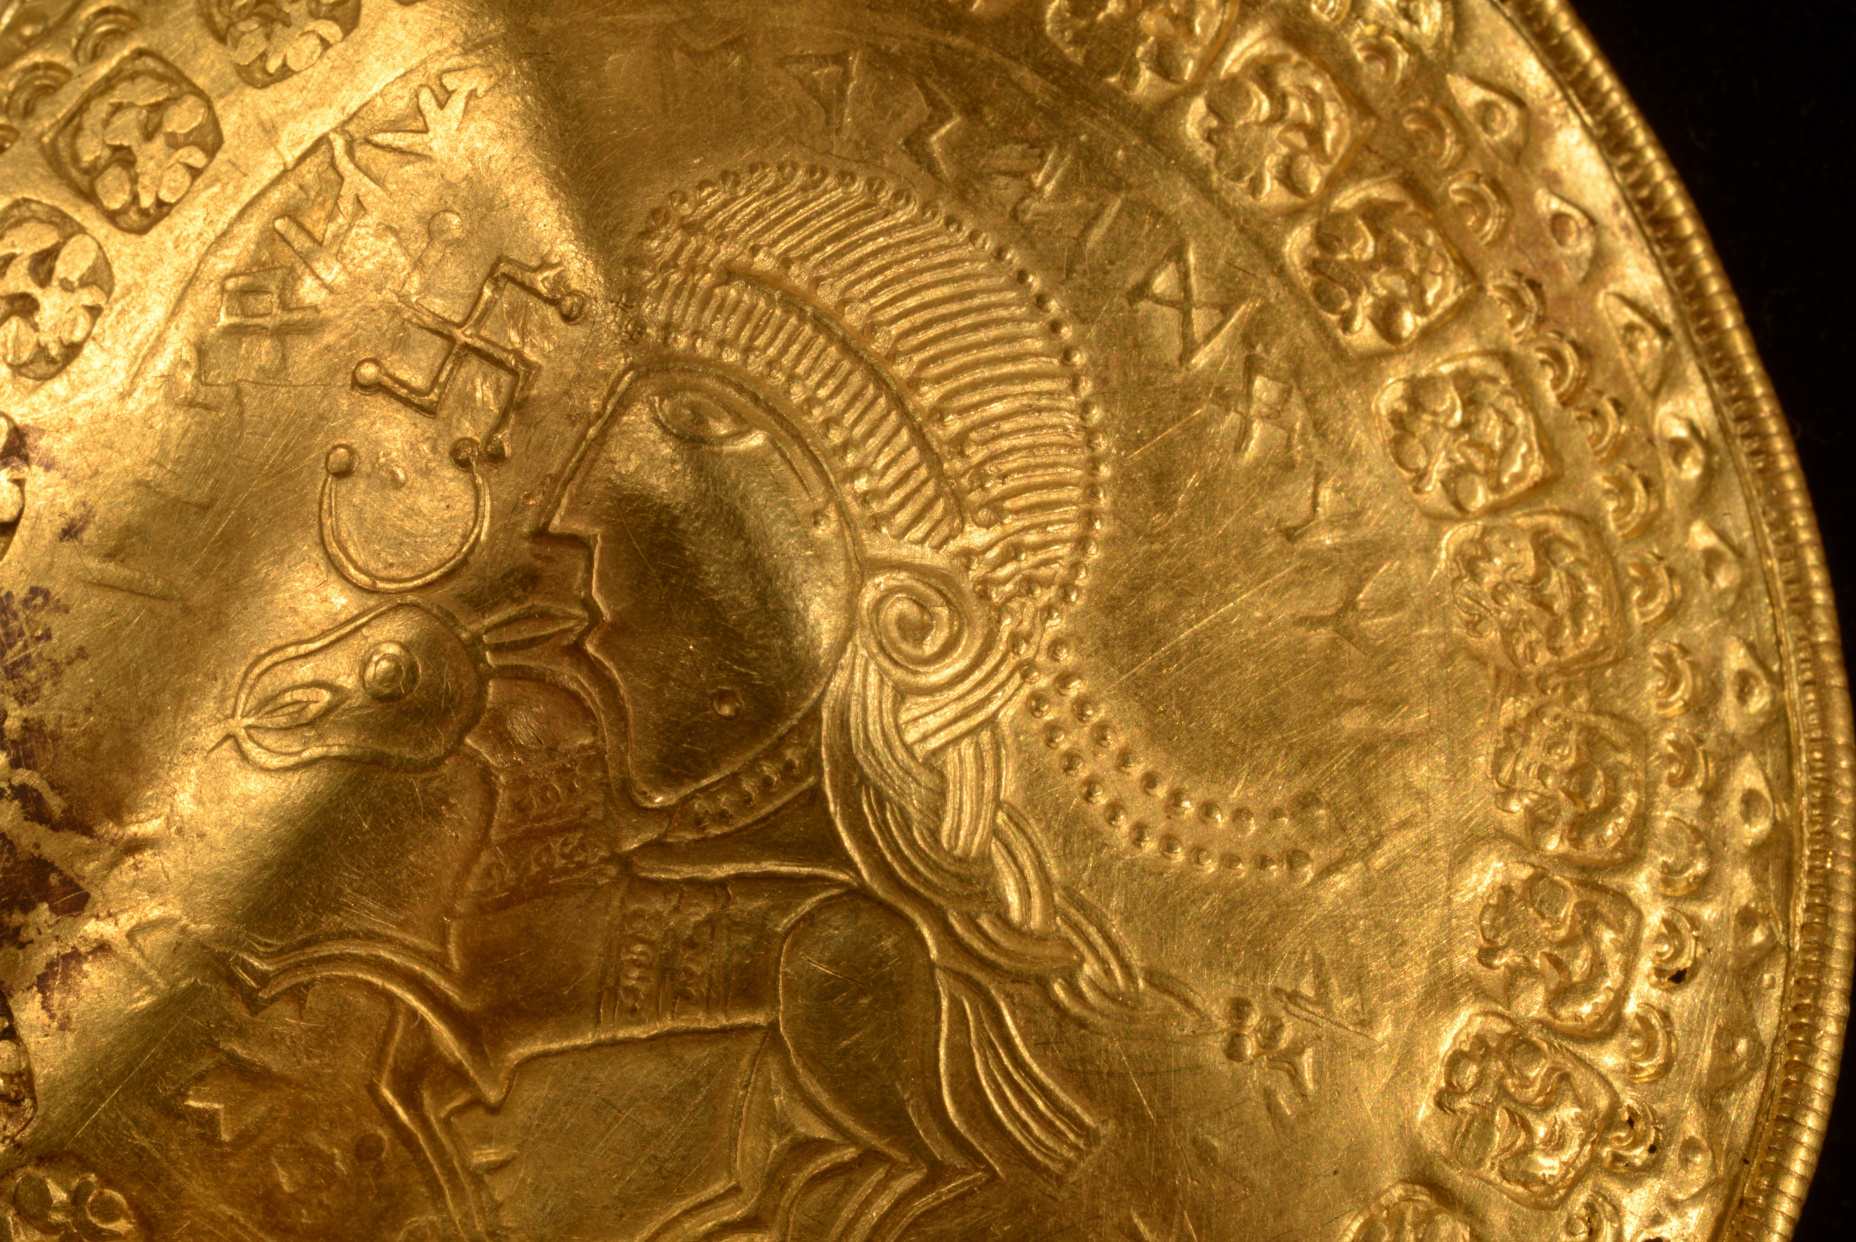 Nápis „On je Odinov muž“ sa nachádza v okrúhlom polkruhu nad hlavou postavy na zlatom brakteáte objavenej v dánskom Vindeleve koncom roku 2020. Vedci identifikovali najstarší známy odkaz na nórskeho boha Odina na zlate. disk objavený v západnom Dánsku.